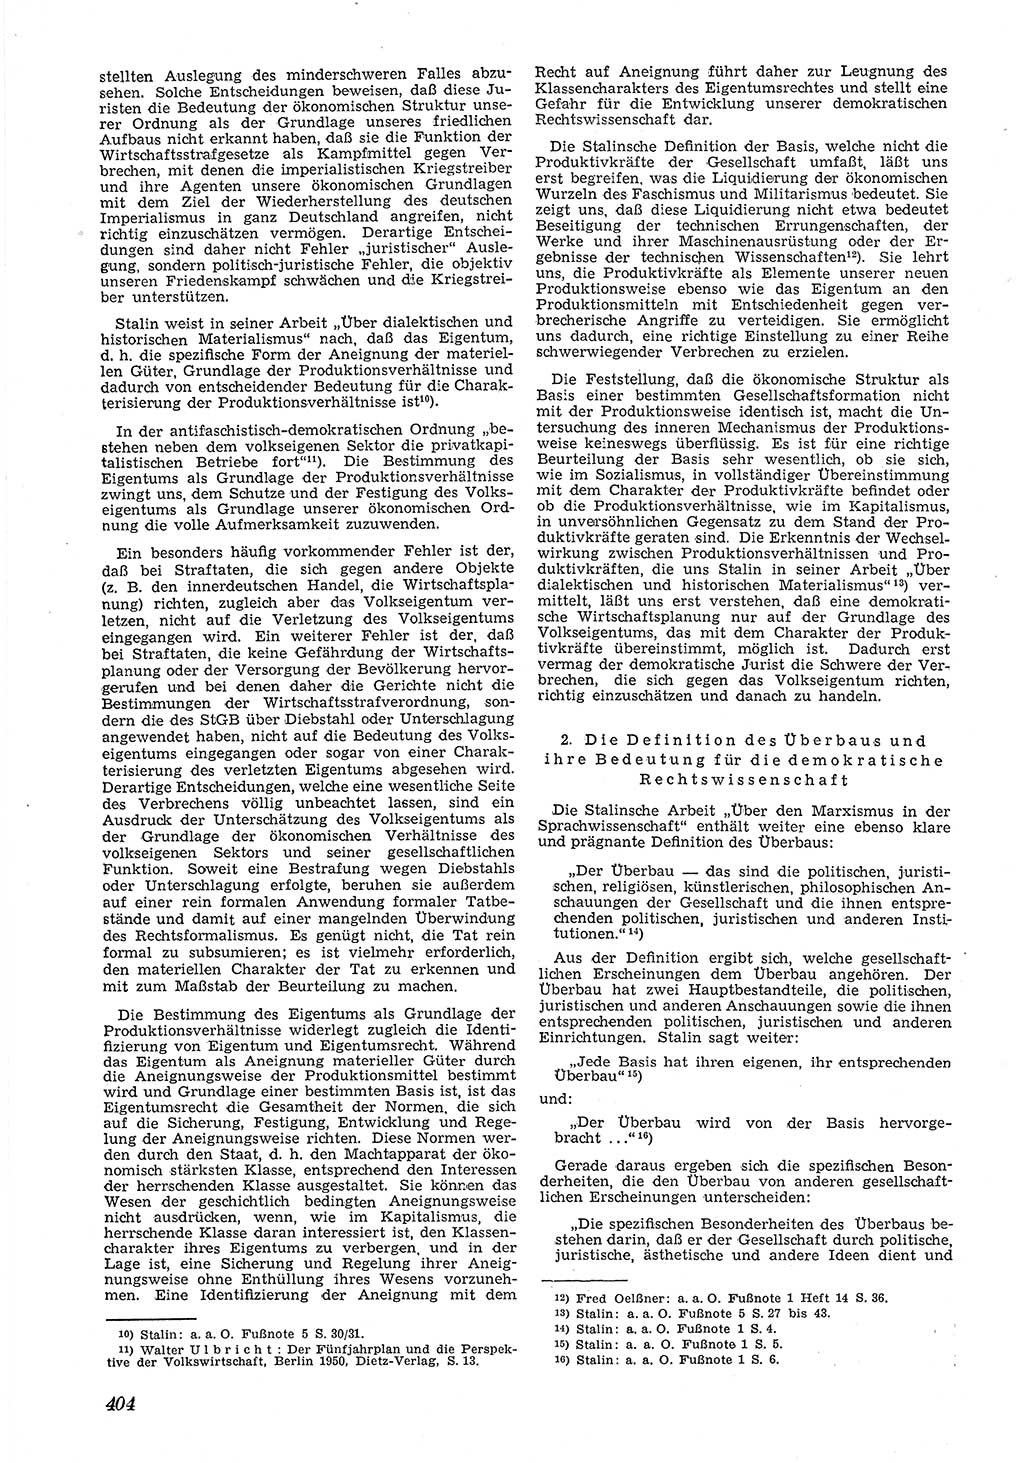 Neue Justiz (NJ), Zeitschrift für Recht und Rechtswissenschaft [Deutsche Demokratische Republik (DDR)], 5. Jahrgang 1951, Seite 404 (NJ DDR 1951, S. 404)